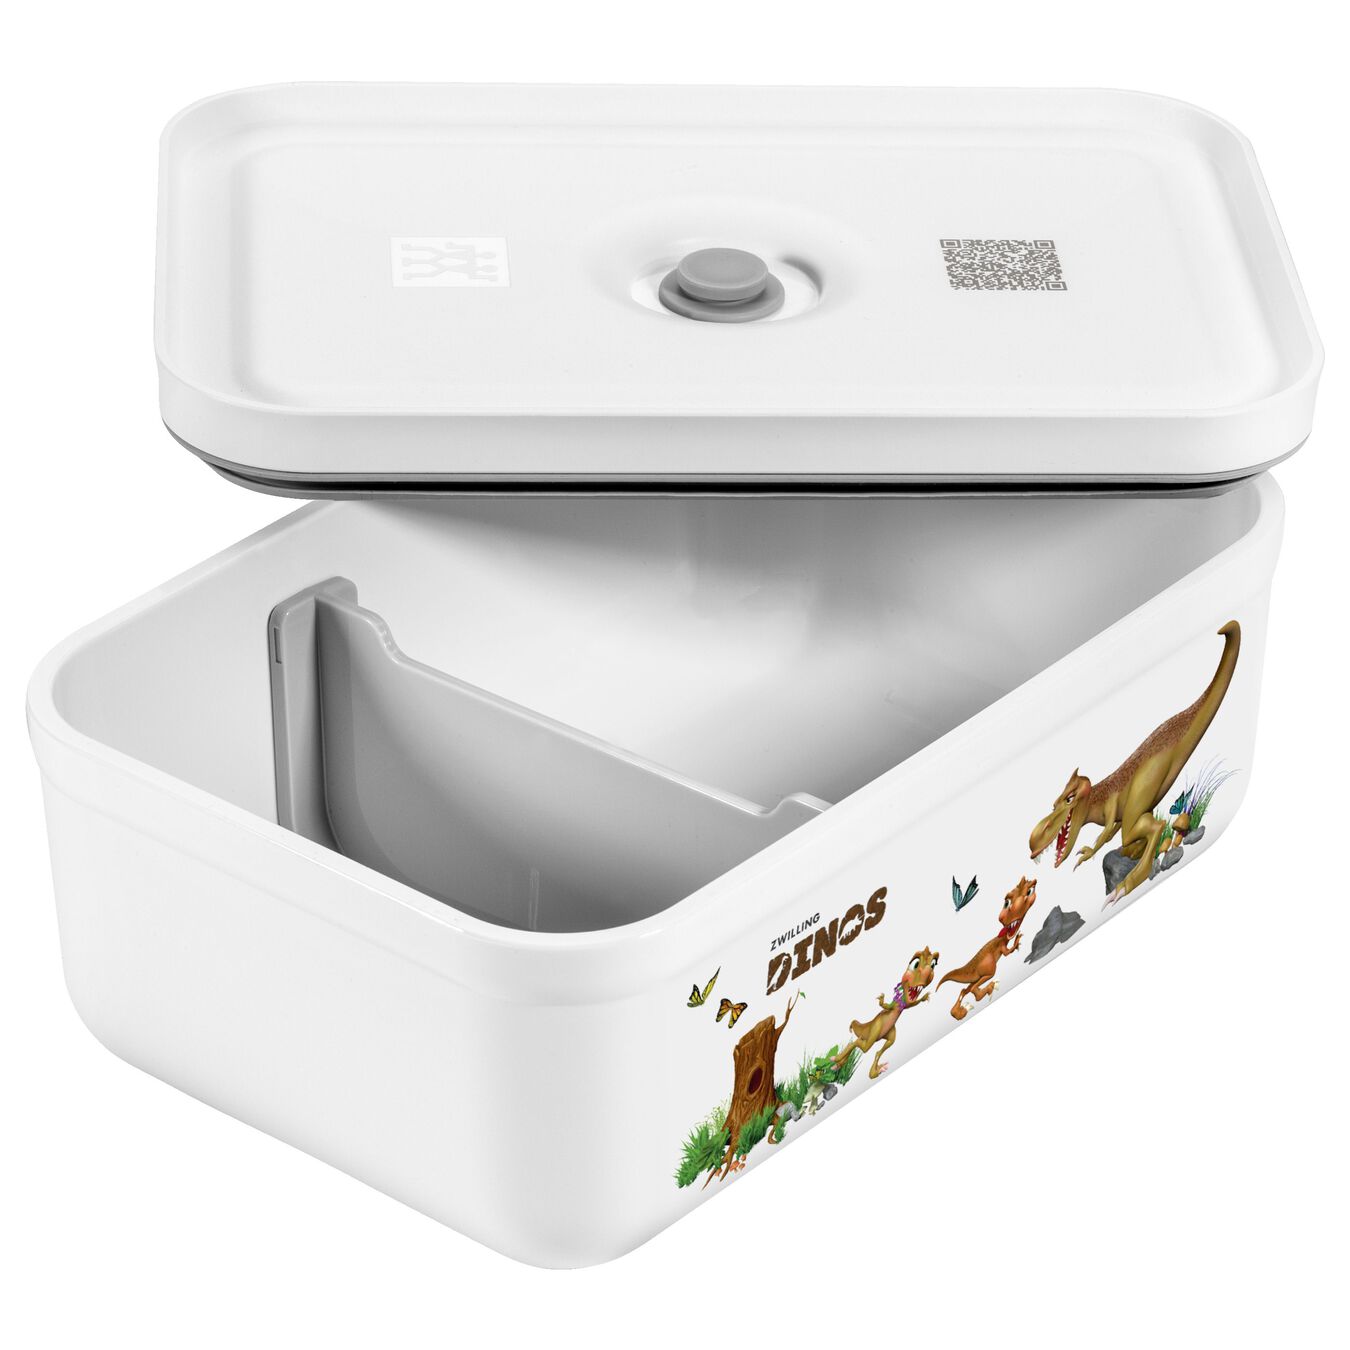 Lunch box sottovuoto L, plastica, bianco-grigio,,large 5